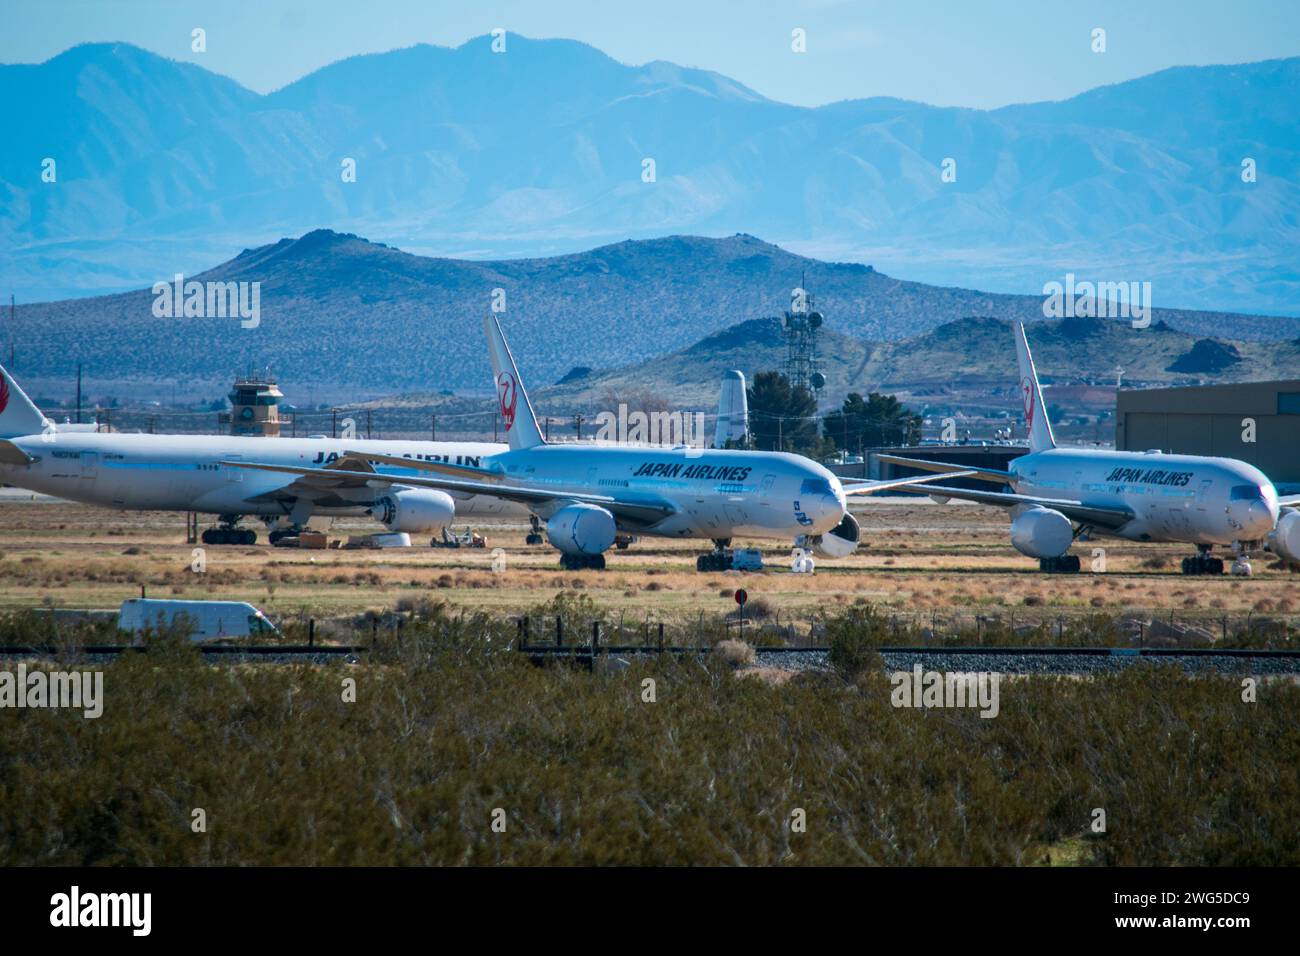 Ce cimetière d'avions se trouve près de la ville de Mojave dans le désert de Mojave en Californie. Banque D'Images